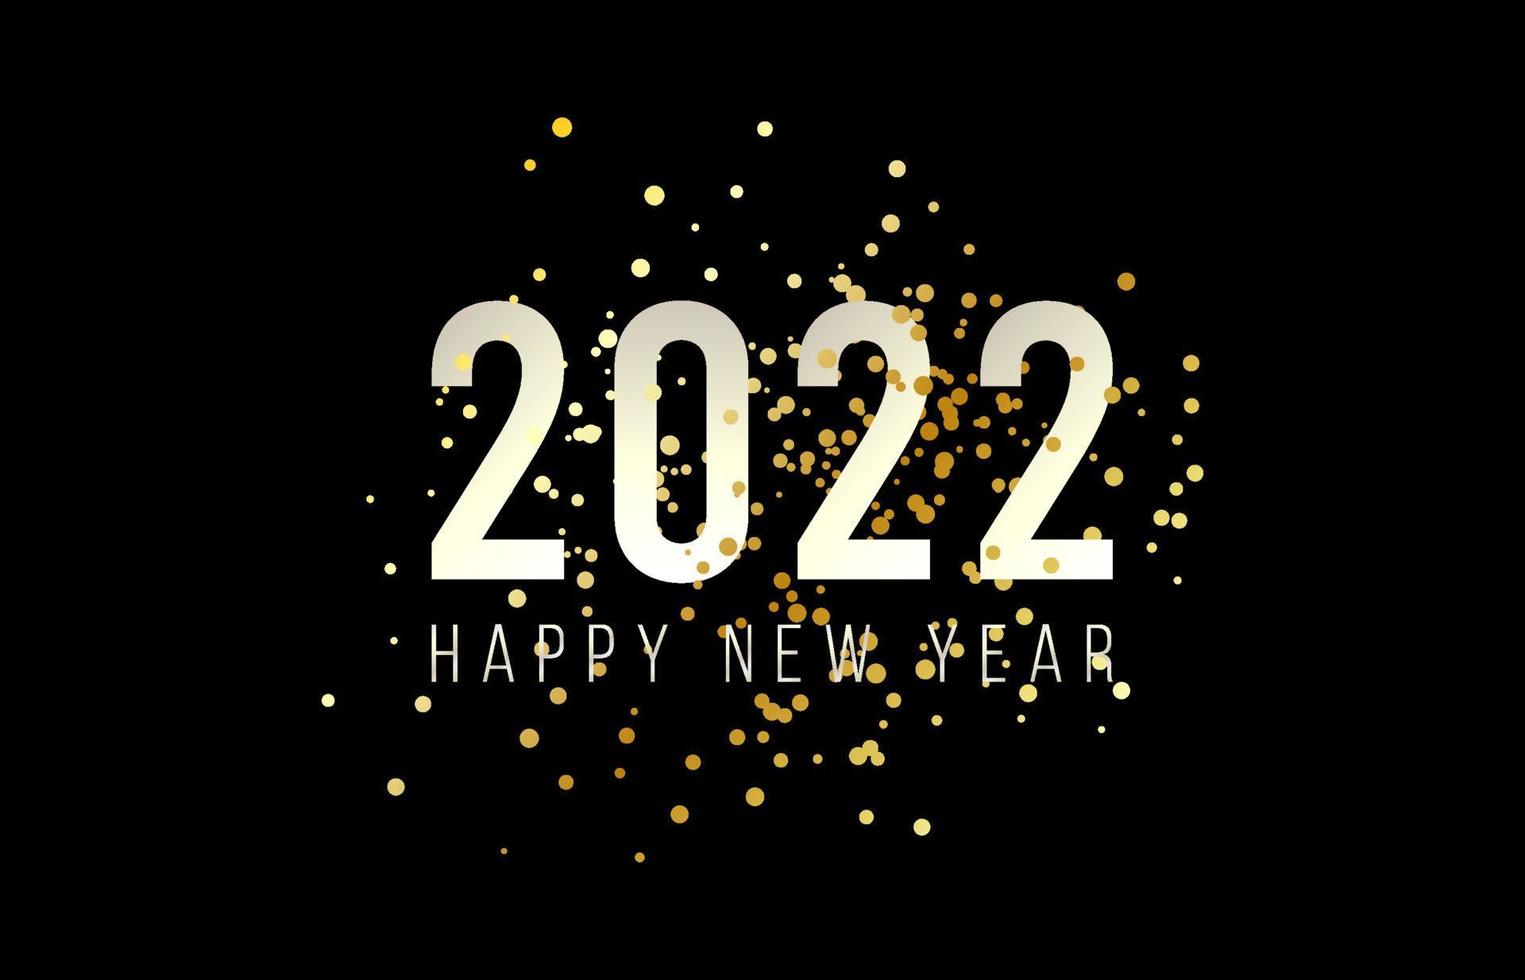 felice anno nuovo 2022 con illustrazione vettoriale di numeri. design di capodanno e natale per calendario, biglietti di auguri o stampa. sfondi alla moda dal design minimalista. illustrazione vettoriale.